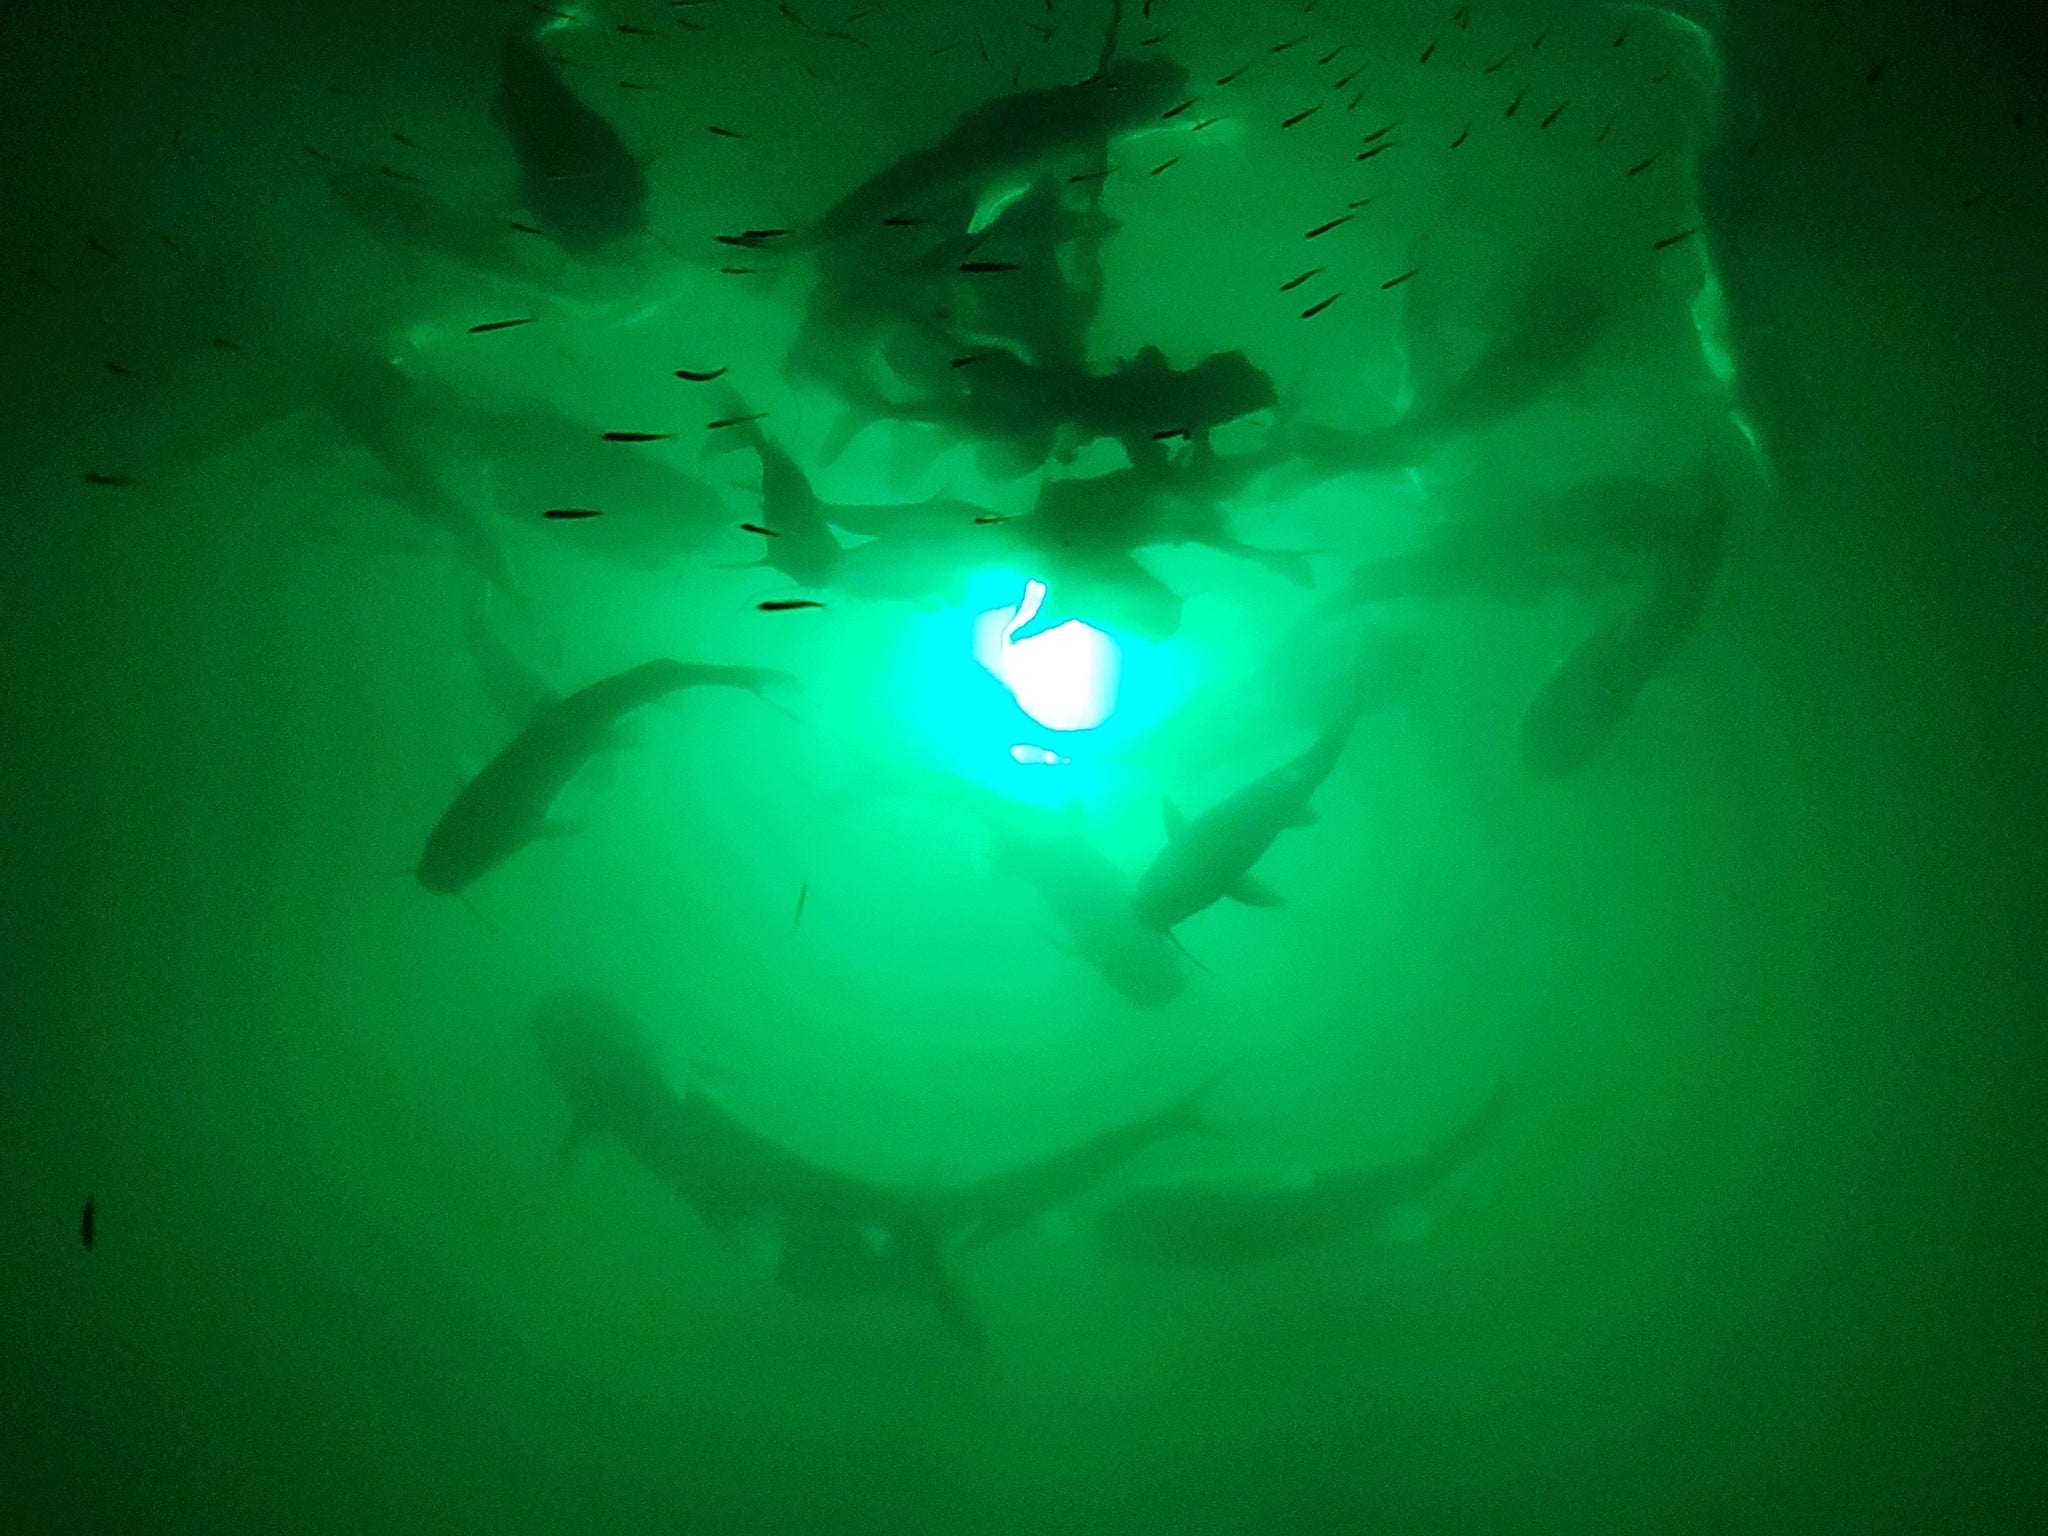 Underwater Fishing Light, 110V & 12V Super Bright Green LED Submersible  Light Attractants for Docks, Boats or Kayaks, IP68 Rated for Fresh & Salt